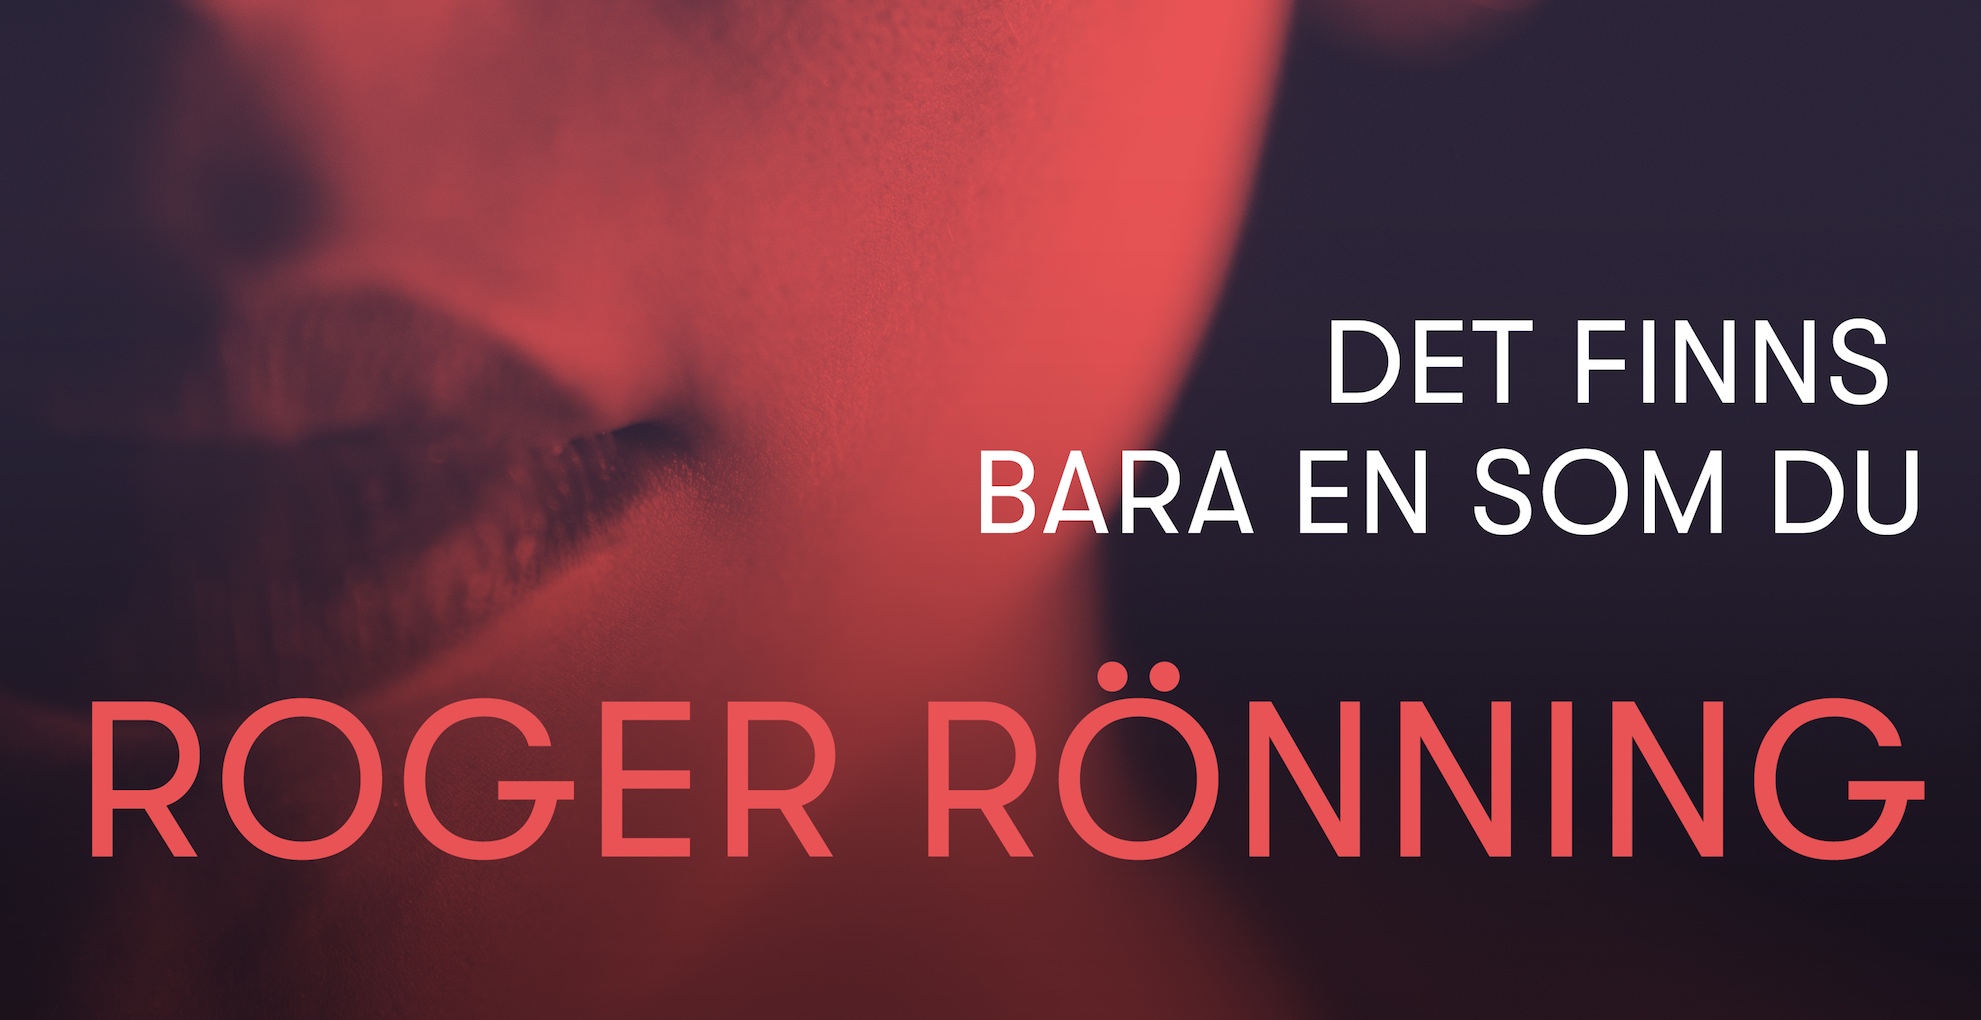 Roger Rönning släpper sitt 15:e album hösten 2020 - inför släpps nu låten ”Det finns bara en som du”! 